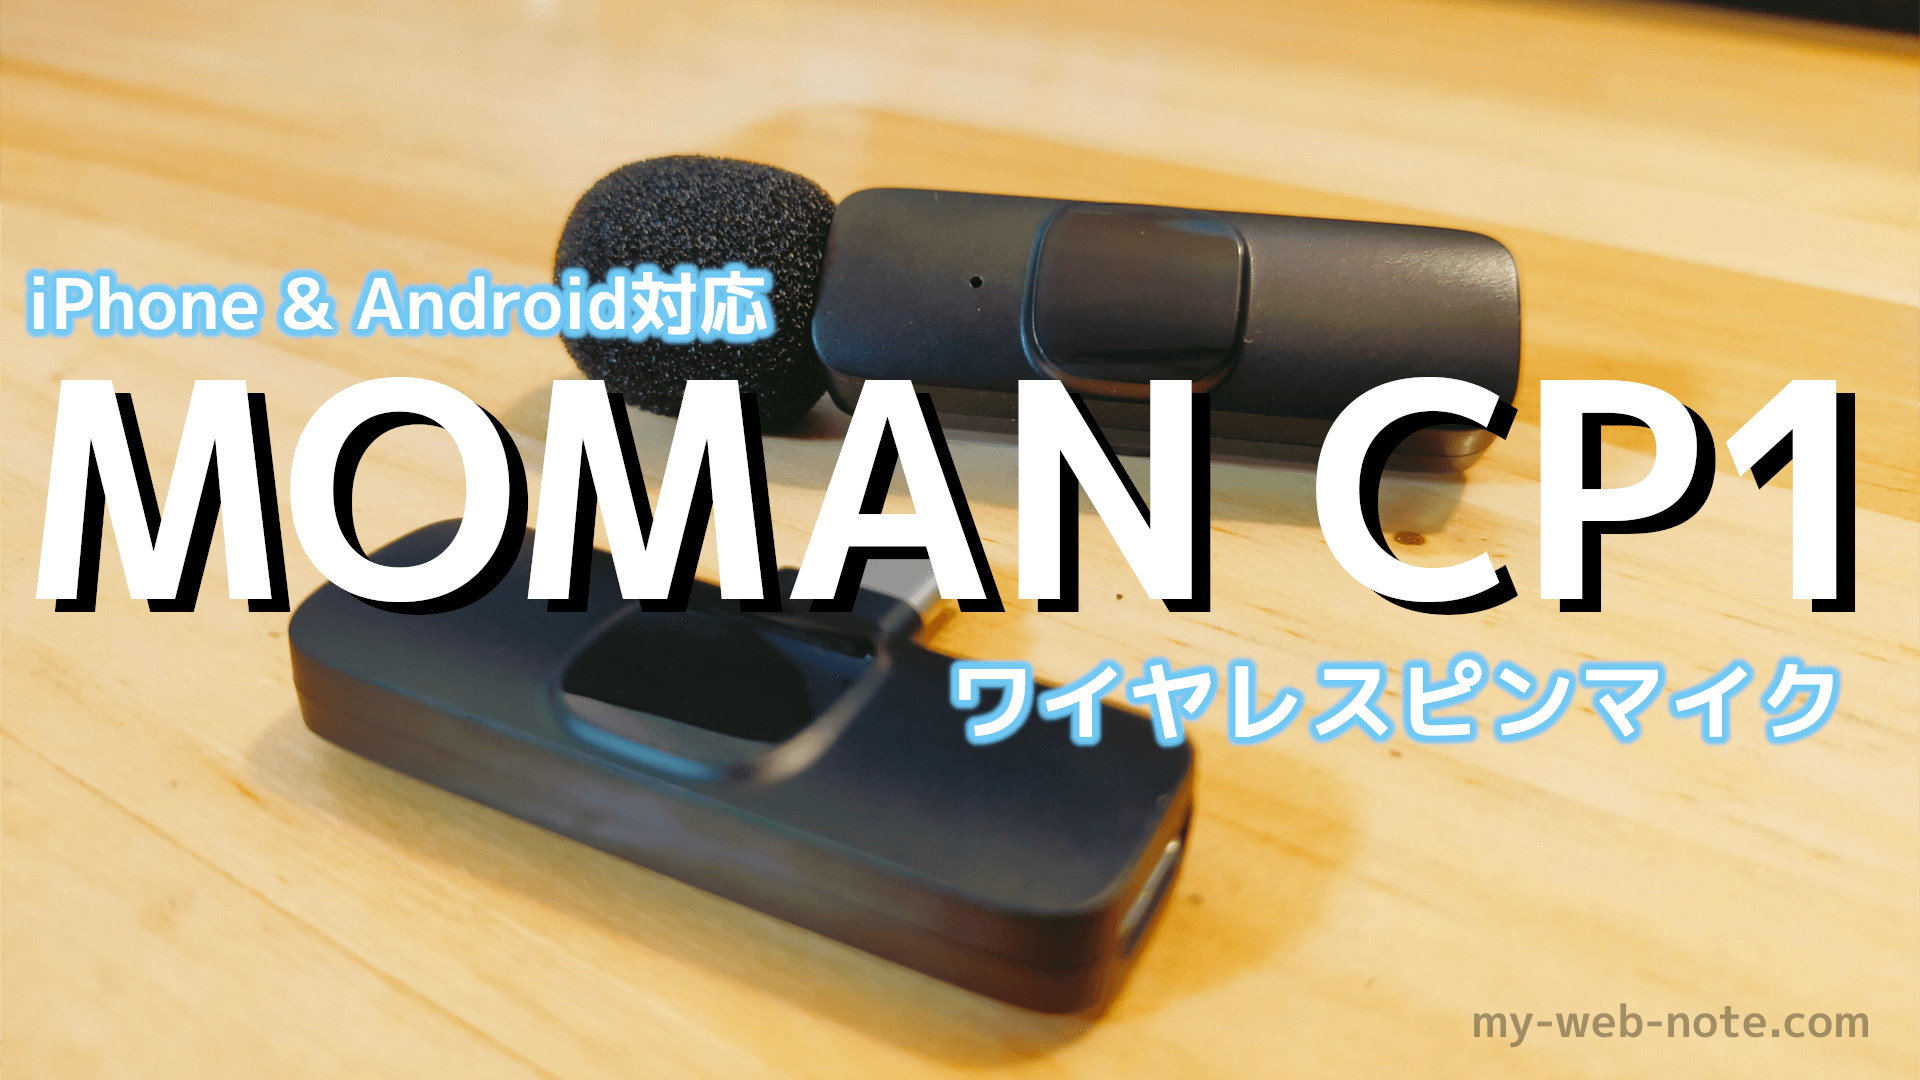 【iPhone&Android対応】スマホ向けワイヤレスピンマイク『MONAN CP1』レビュー